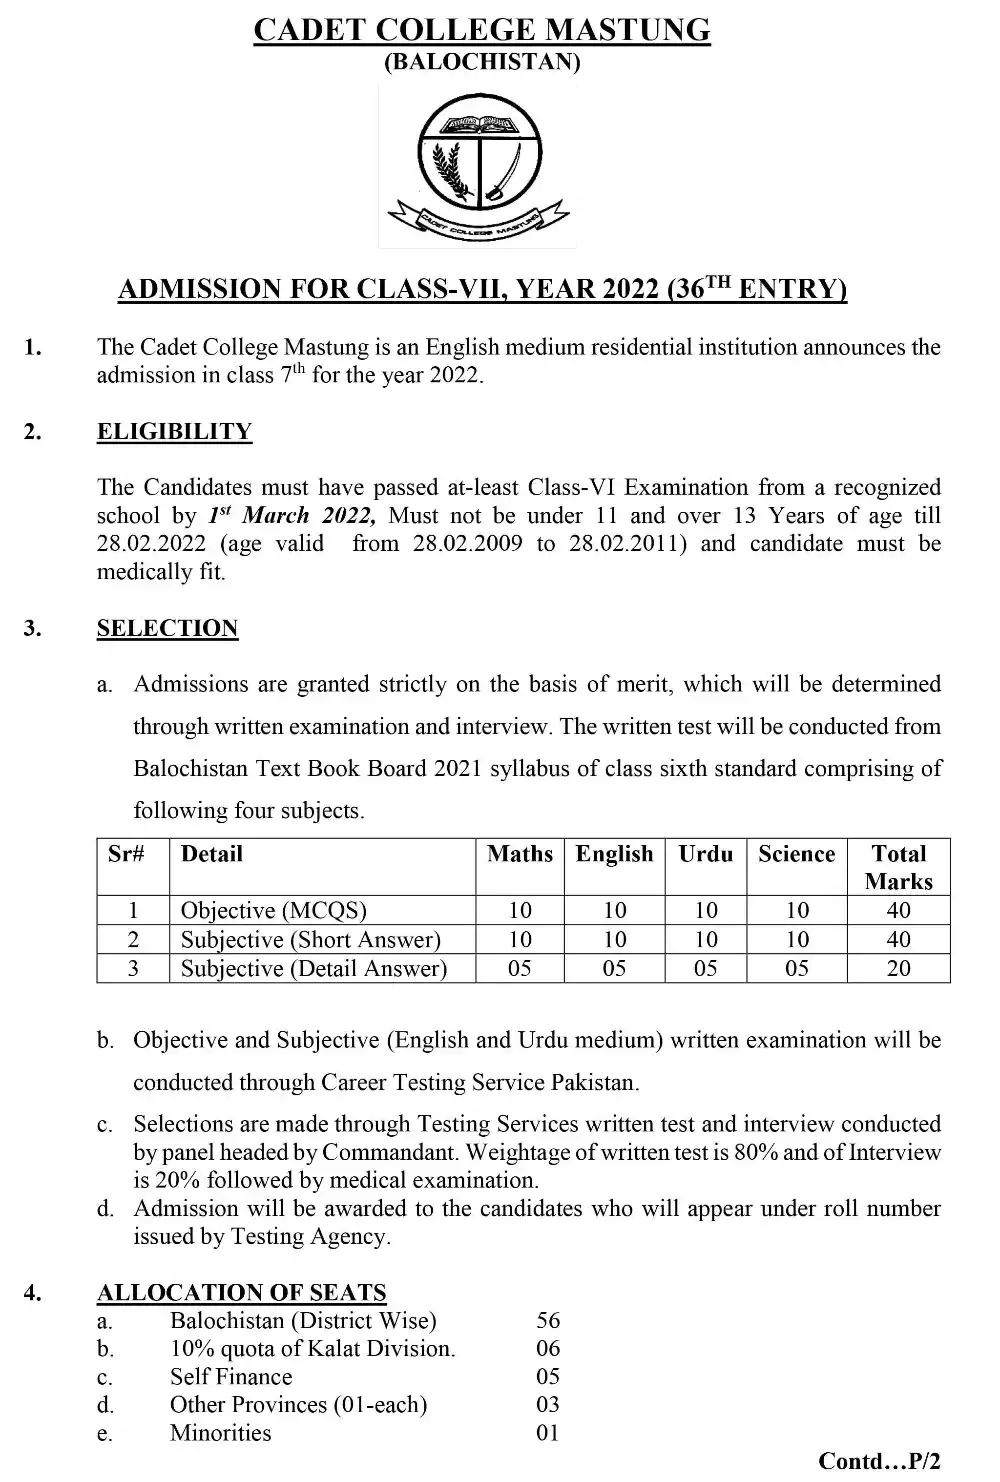 Cadet College Mastung Balochistan Admission 2022